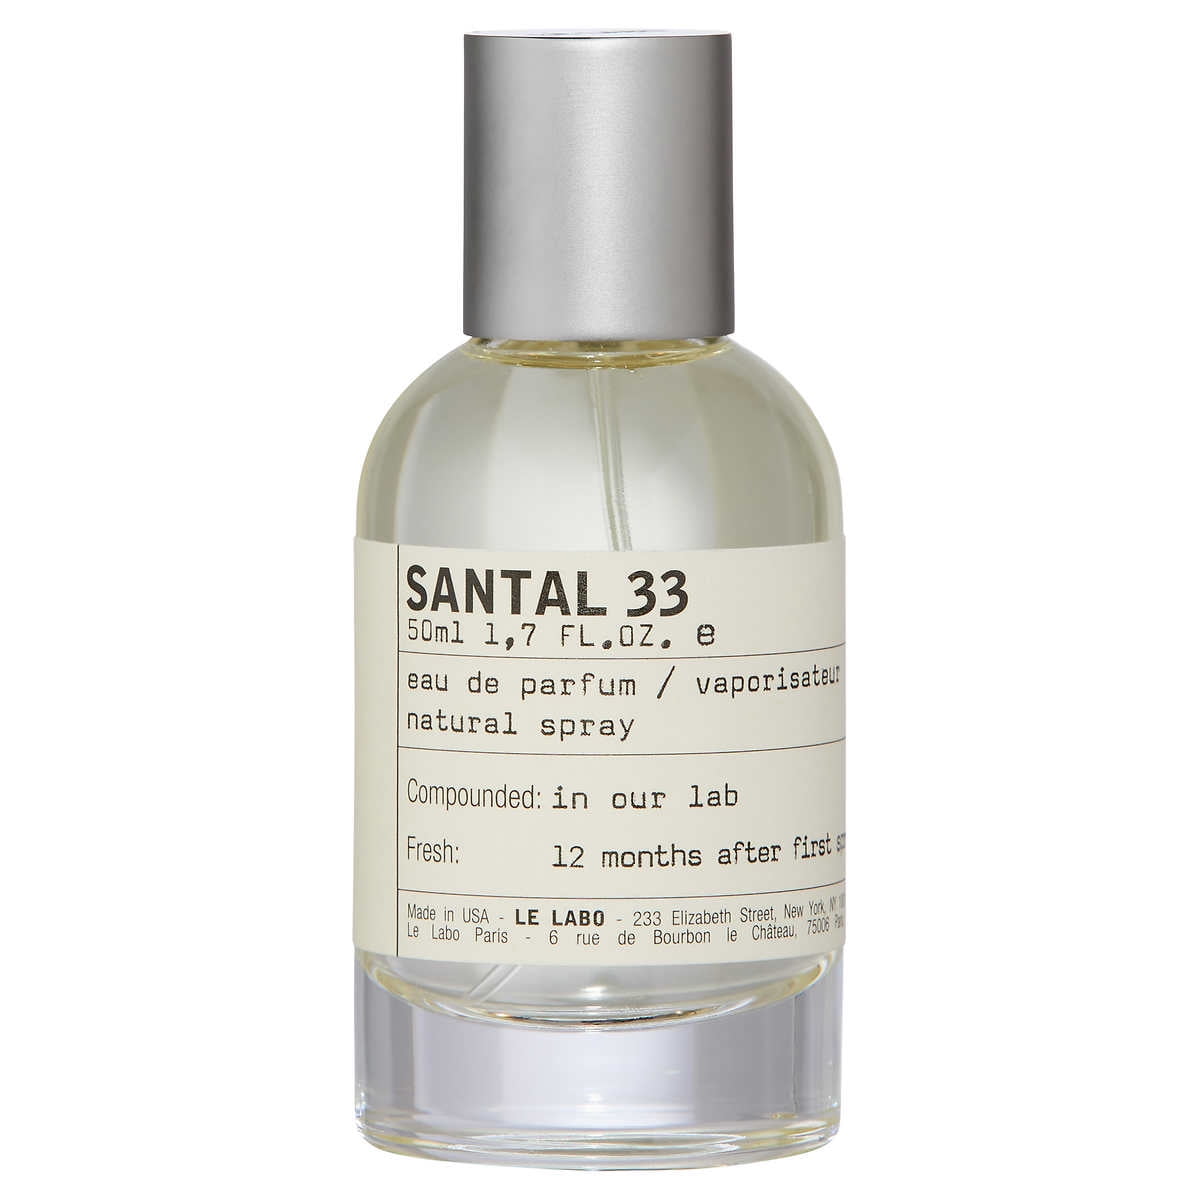 Le Labo Santal 33 - Eau de Parfum, Spray 3.4 oz / 100ml Fragrances for Unisex